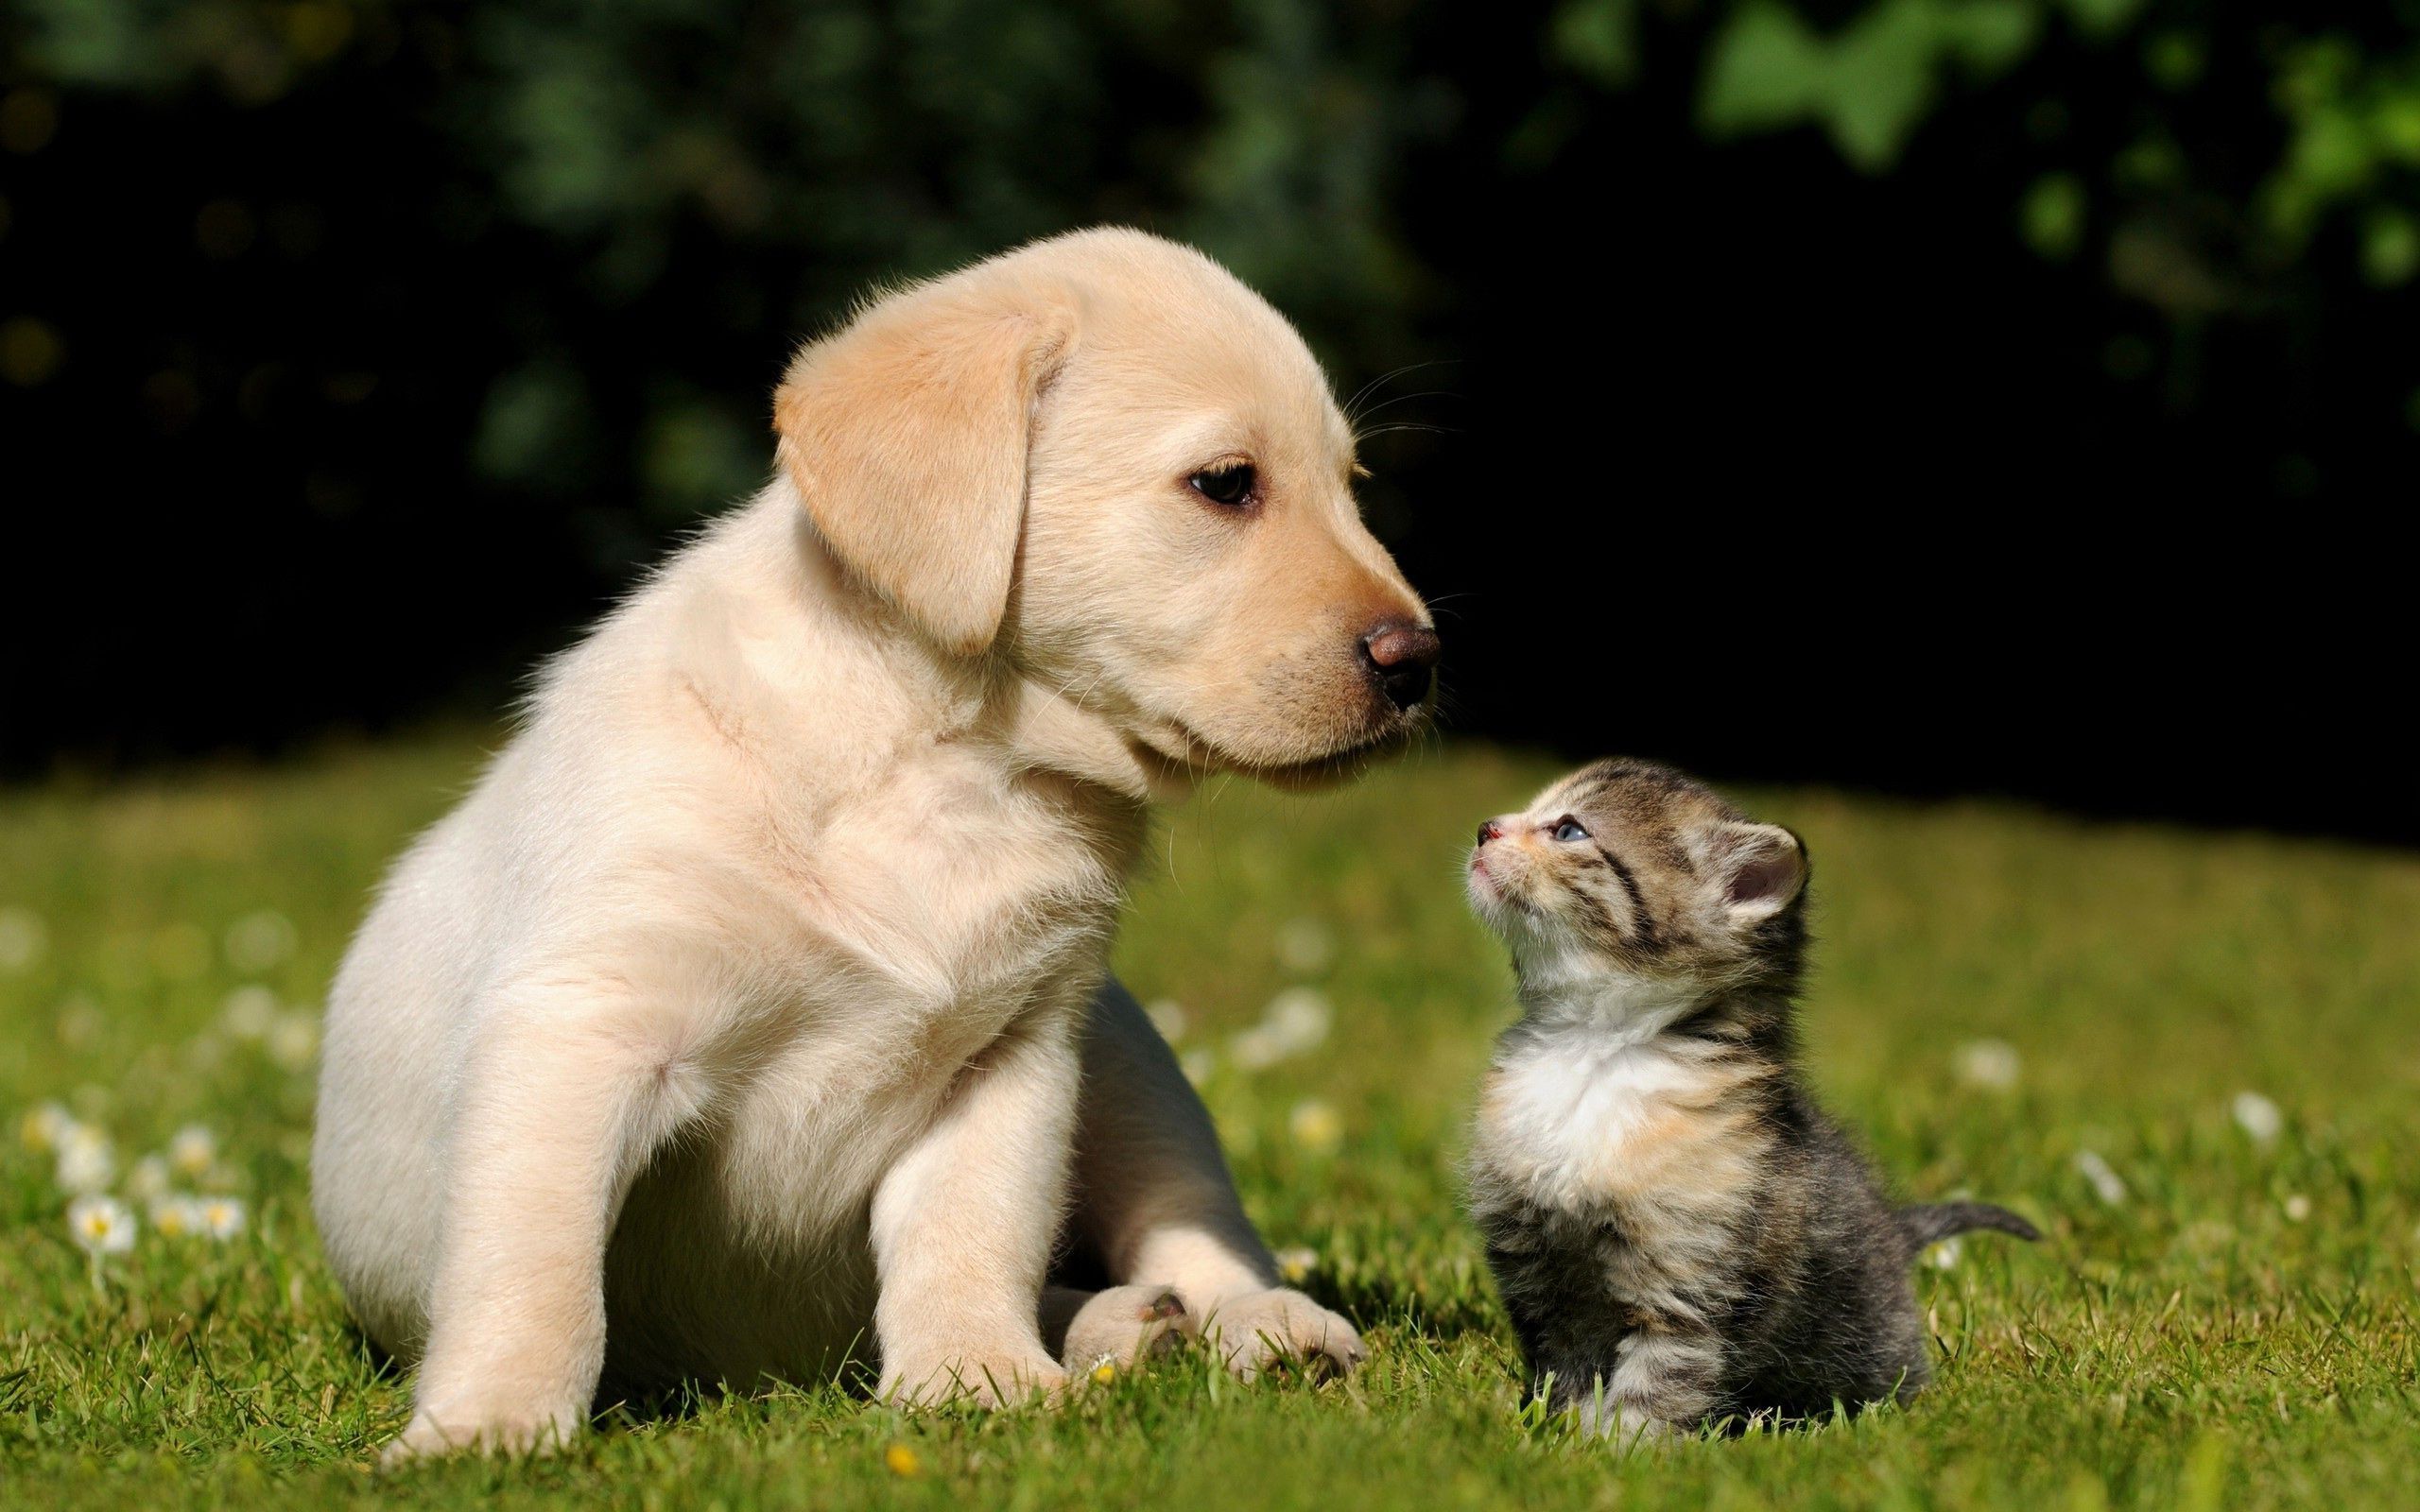 Puppy and Kitten HD Wallpaper. HDX Wallpaper. Cute puppies